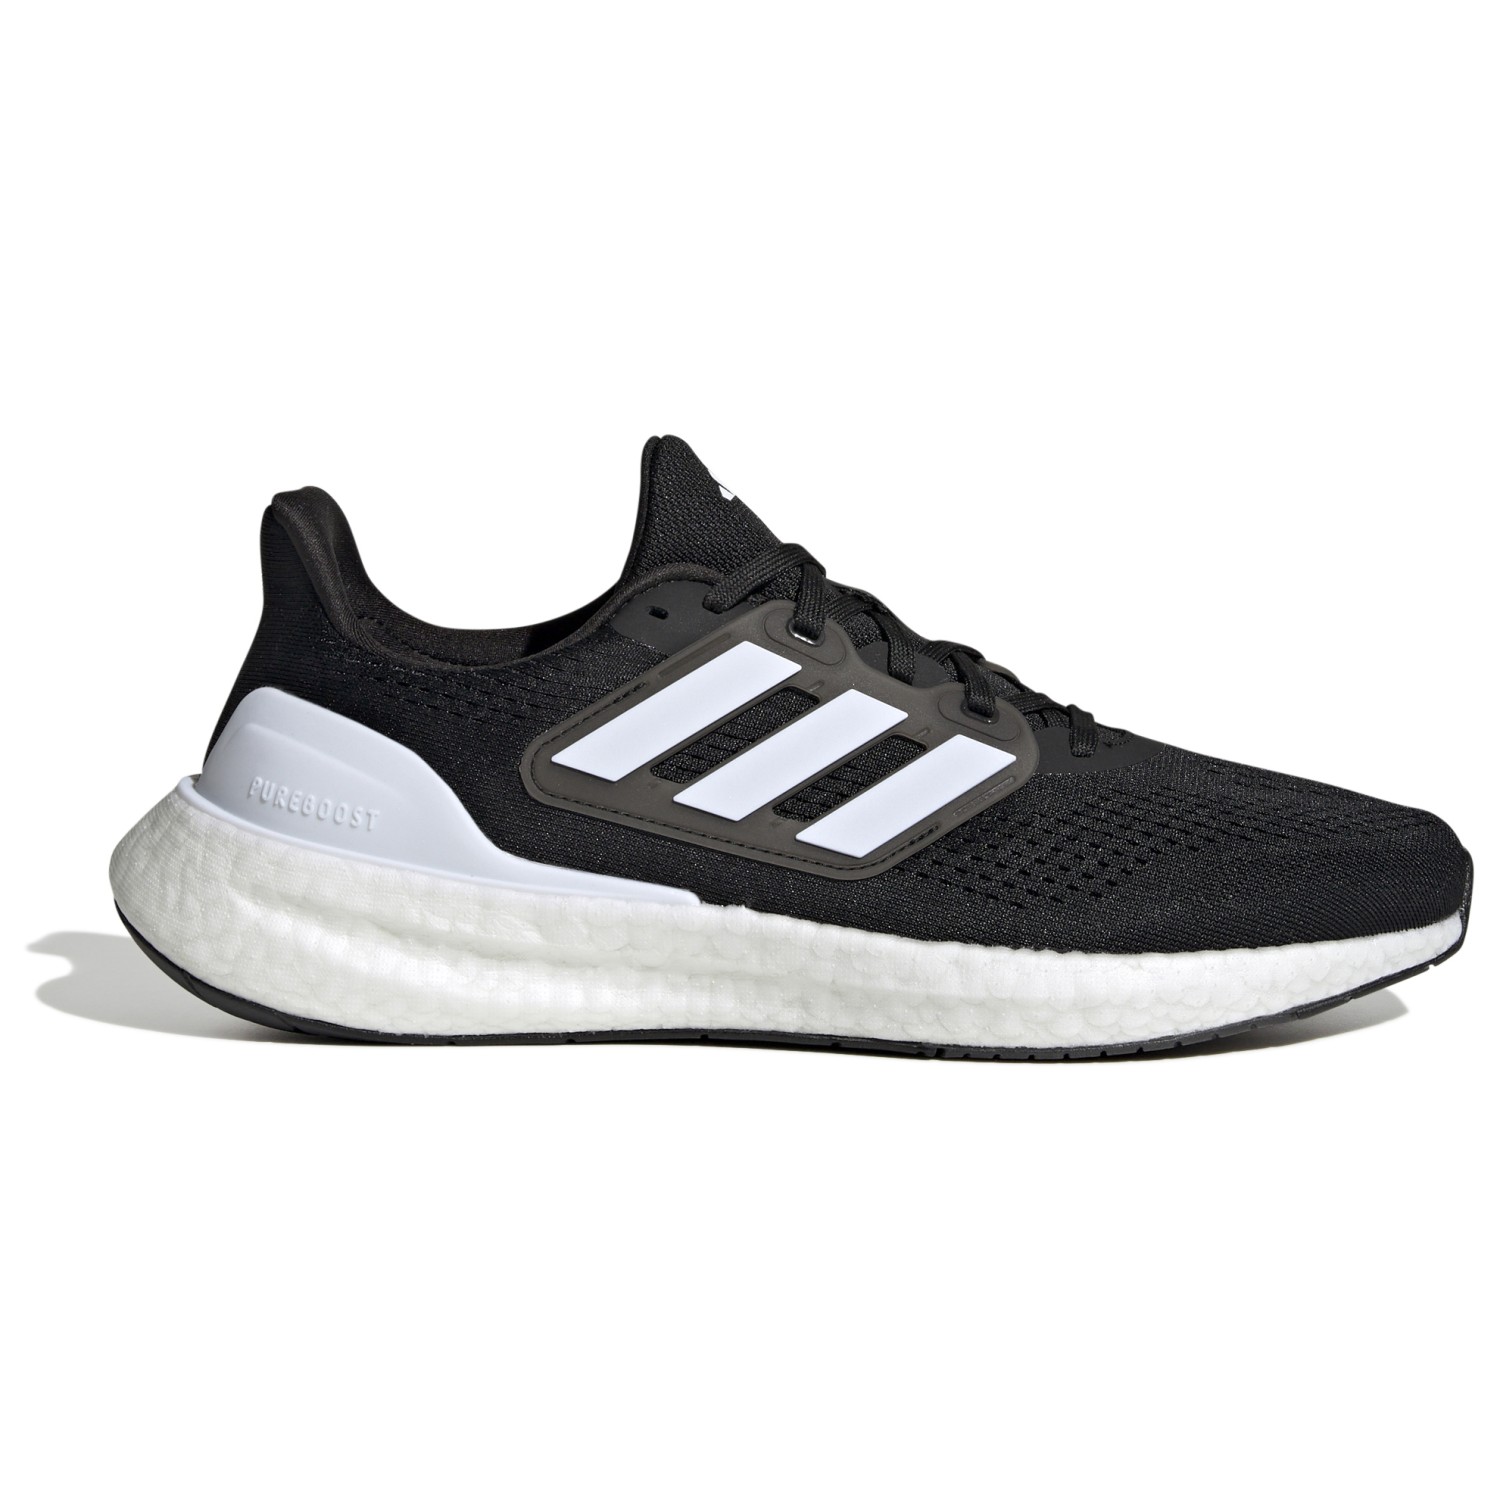 Беговая обувь Adidas Pureboost 23, цвет Core Black/FTWR White/Carbon беговая обувь adidas adizero adios 8 цвет carbon ftw white core black